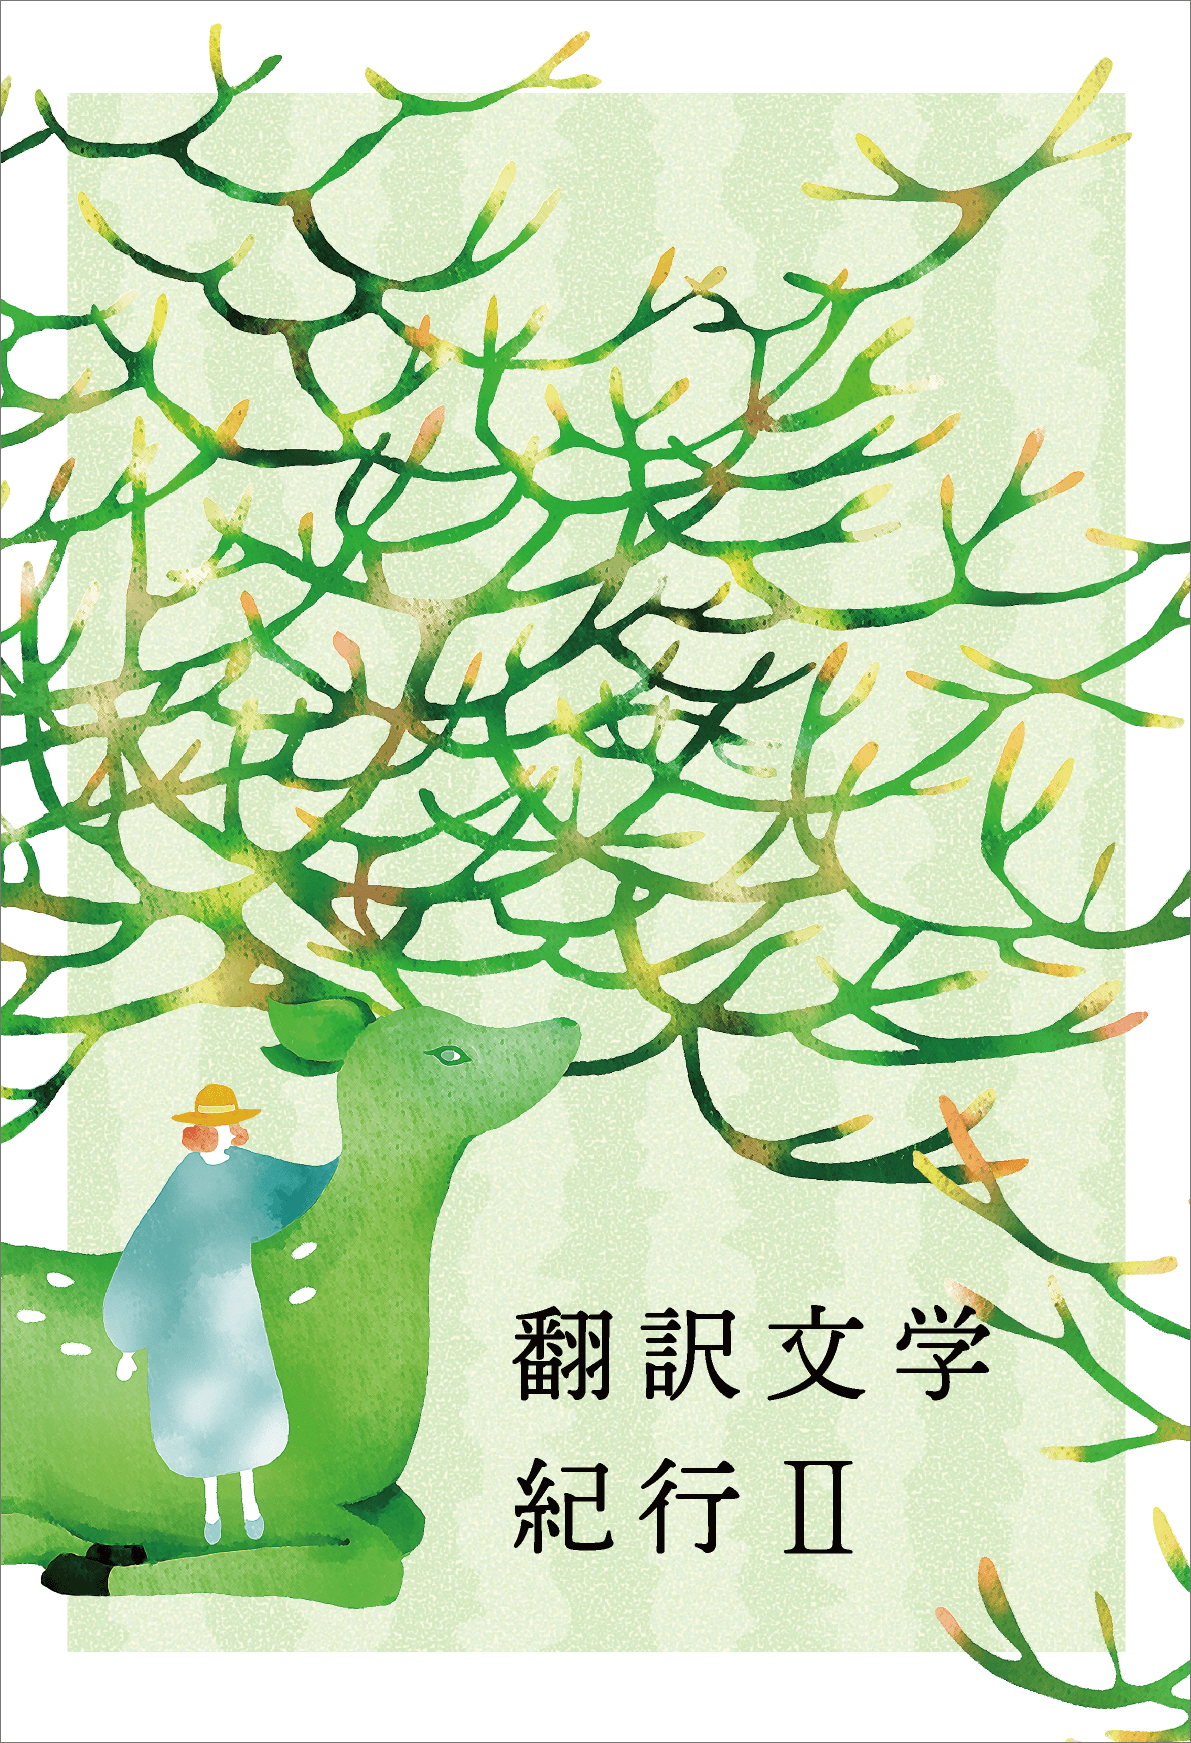 翻訳文学紀行IIの表紙。緑の鹿が描かれている。